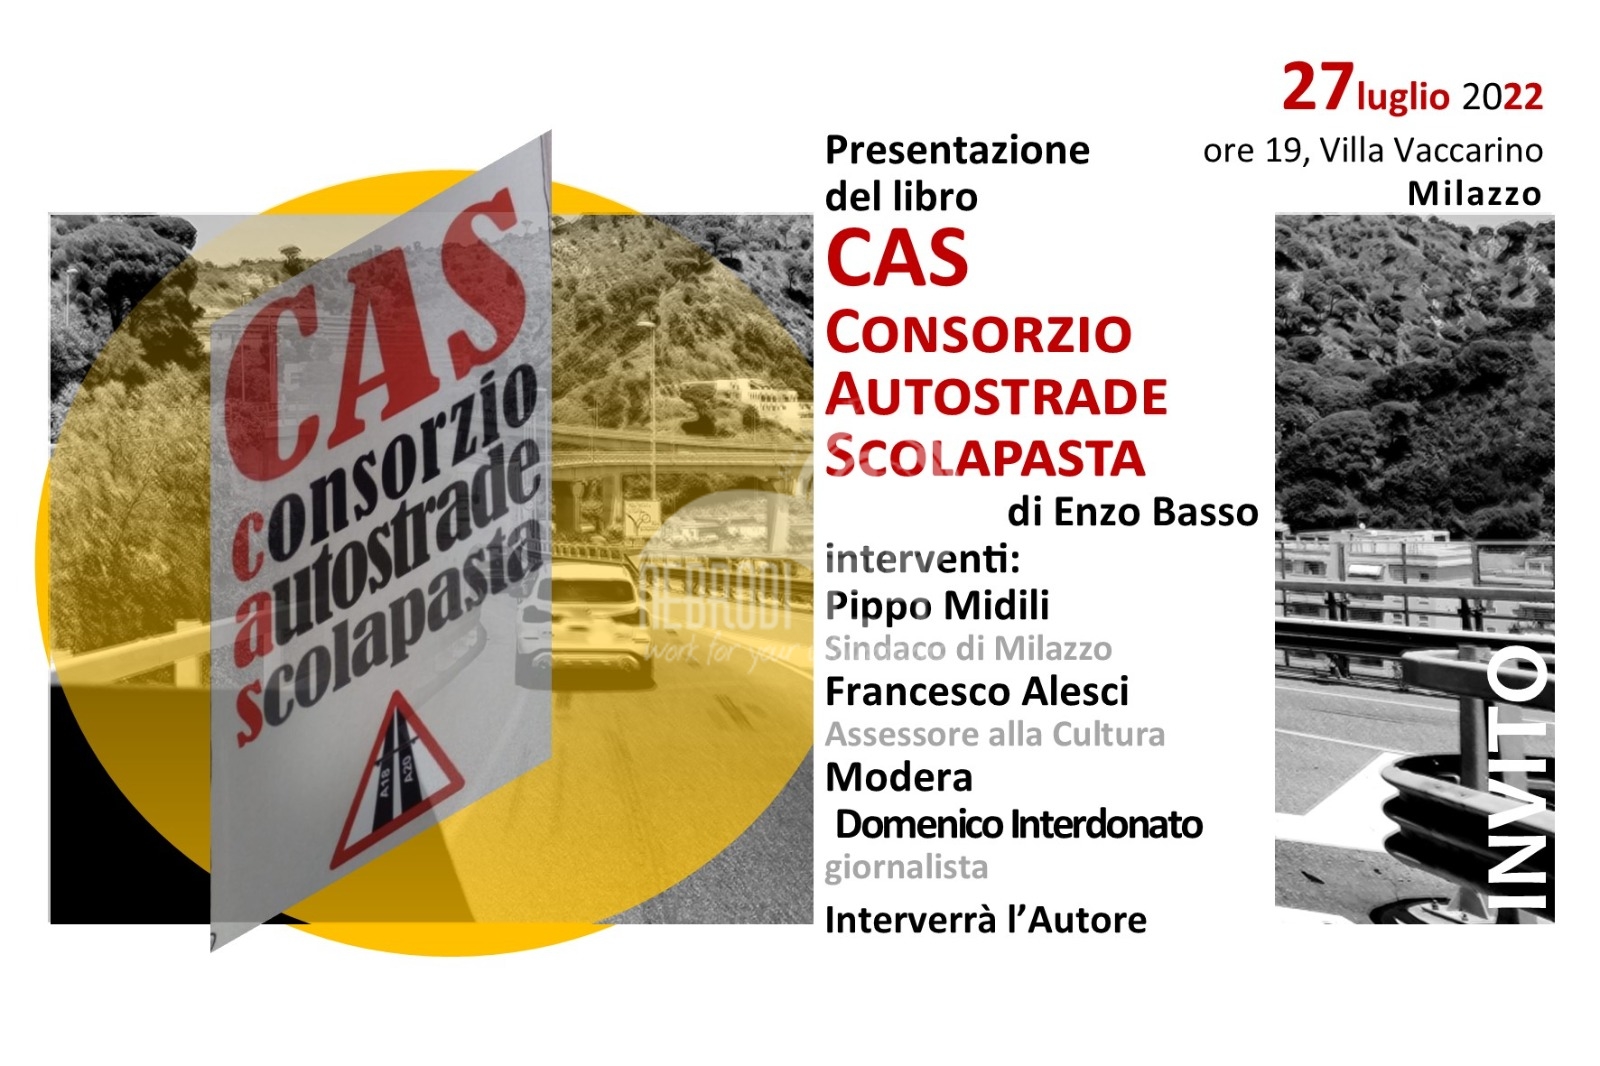 Milazzo – Mercoledì a Villa Vaccarino la presentazione del libro “Cas, Consorzio autostradale scolapasta” scritto da Enzo Basso